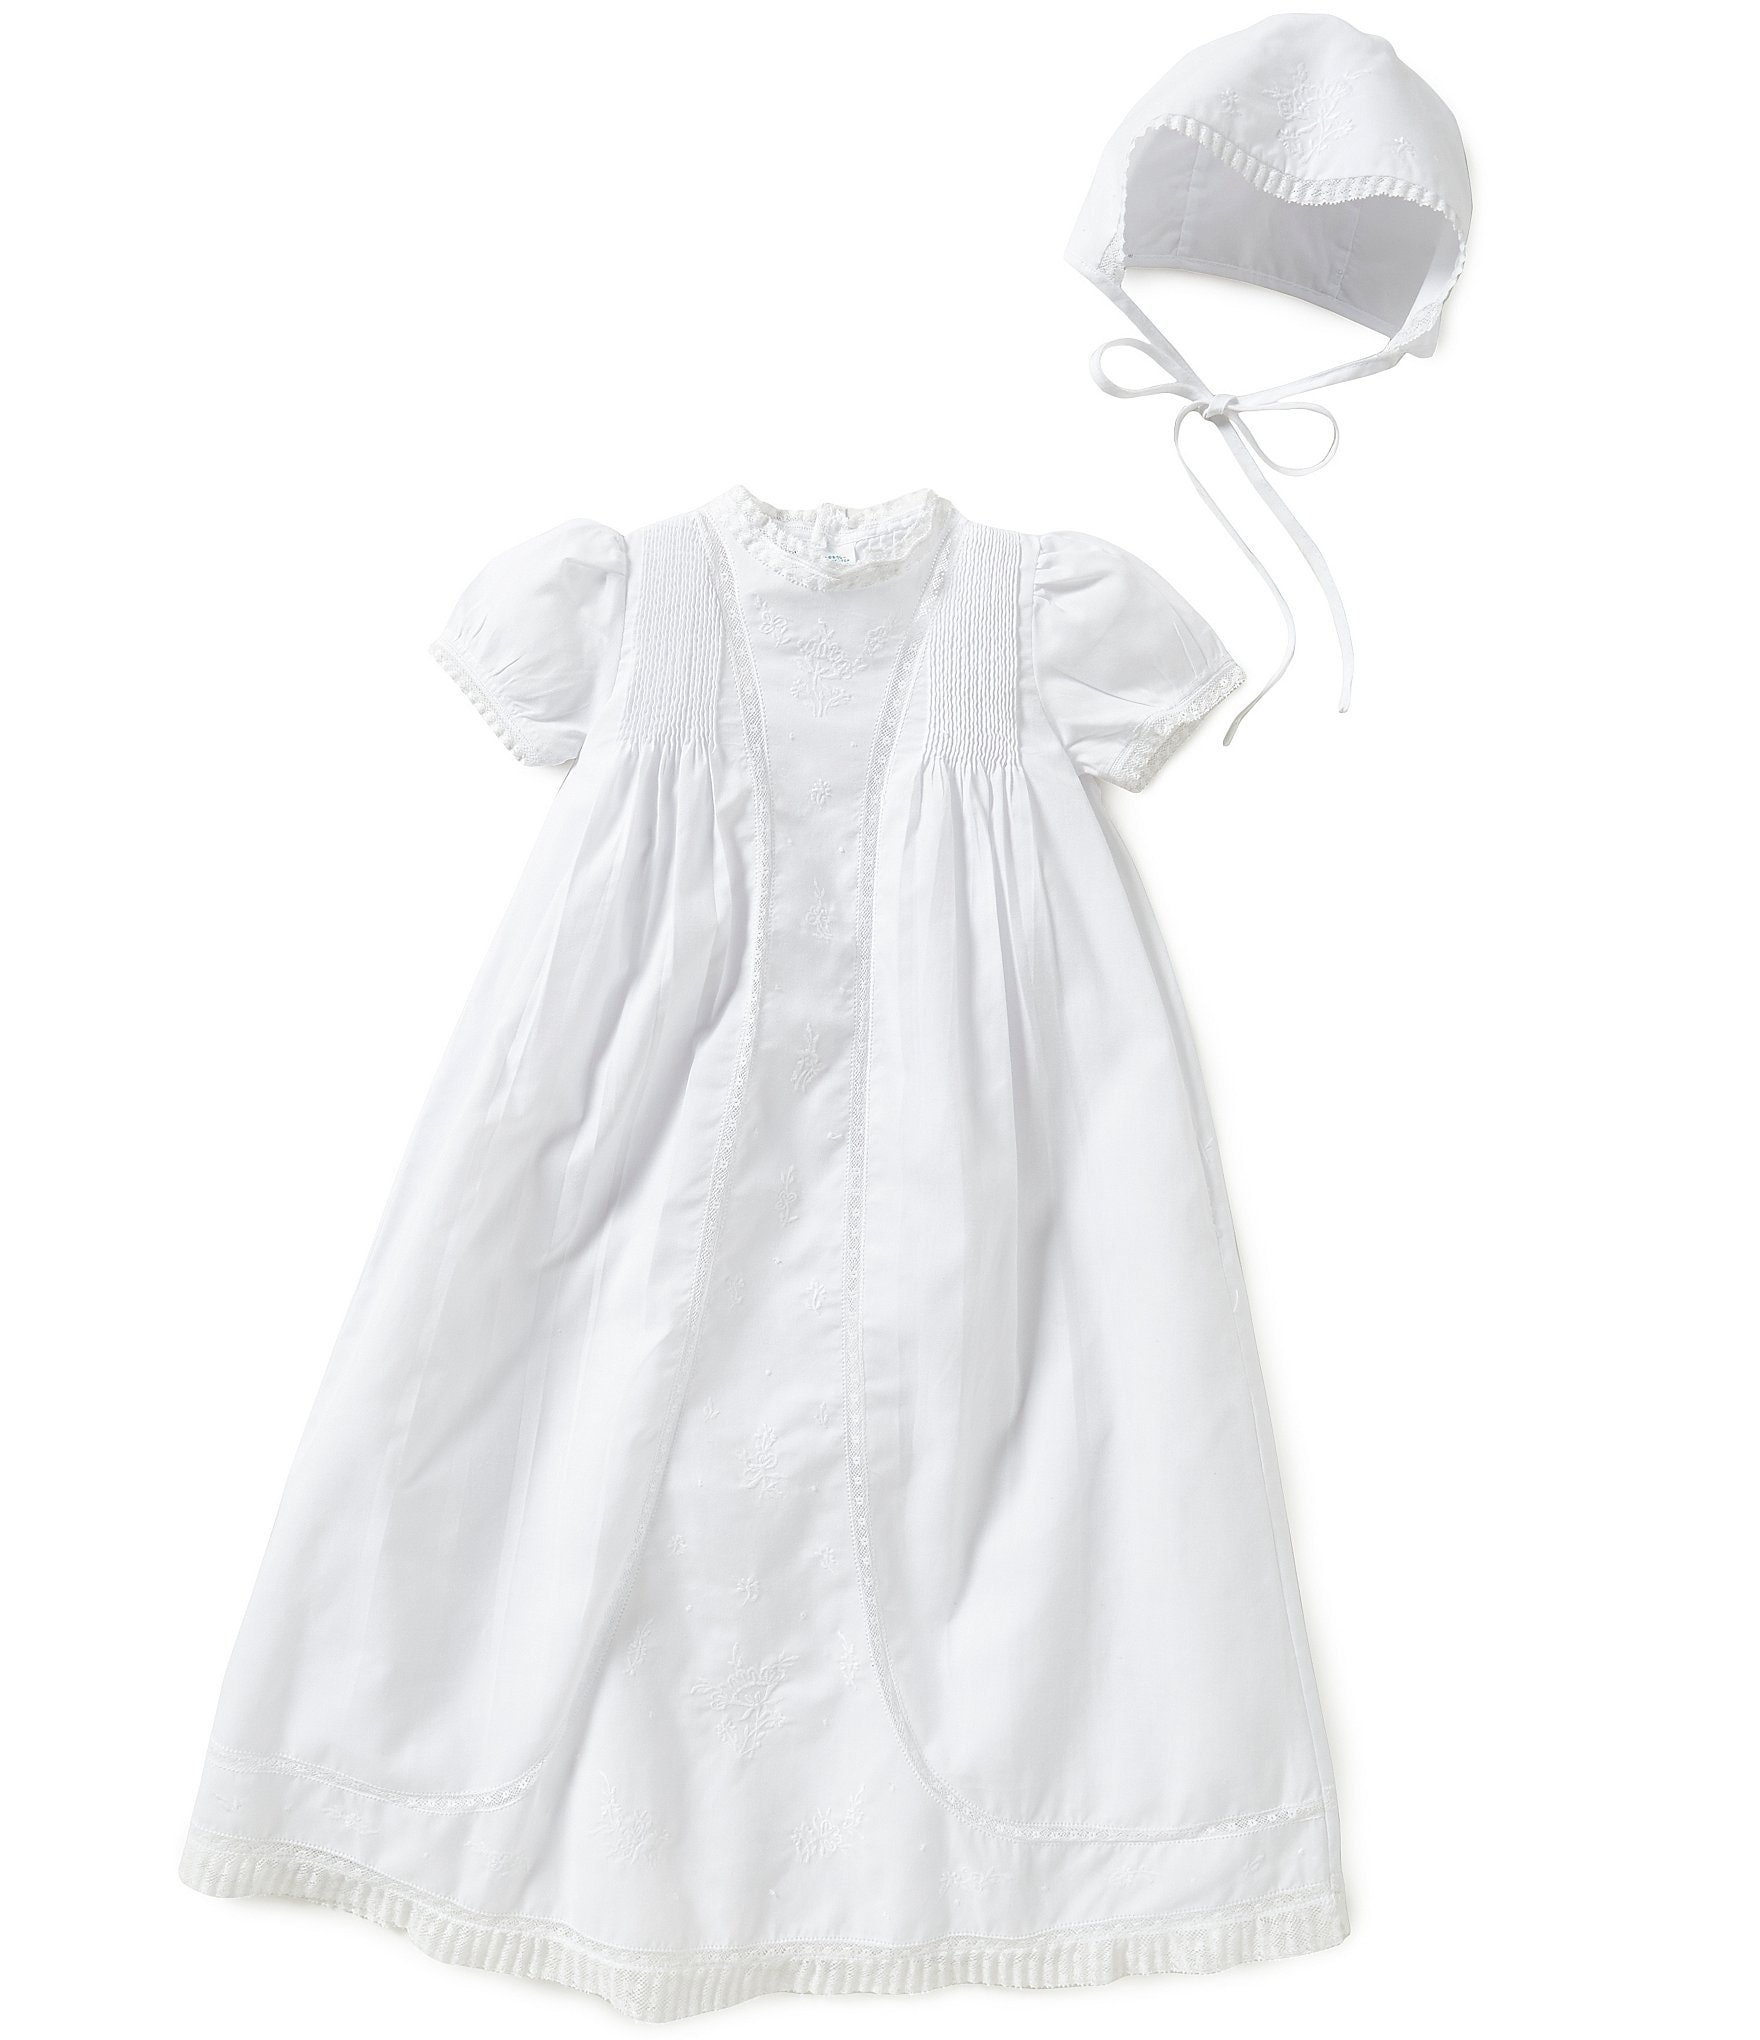 Lorelai's Floral Newborn Baby Knot Gown & Hat Set | Caden Lane